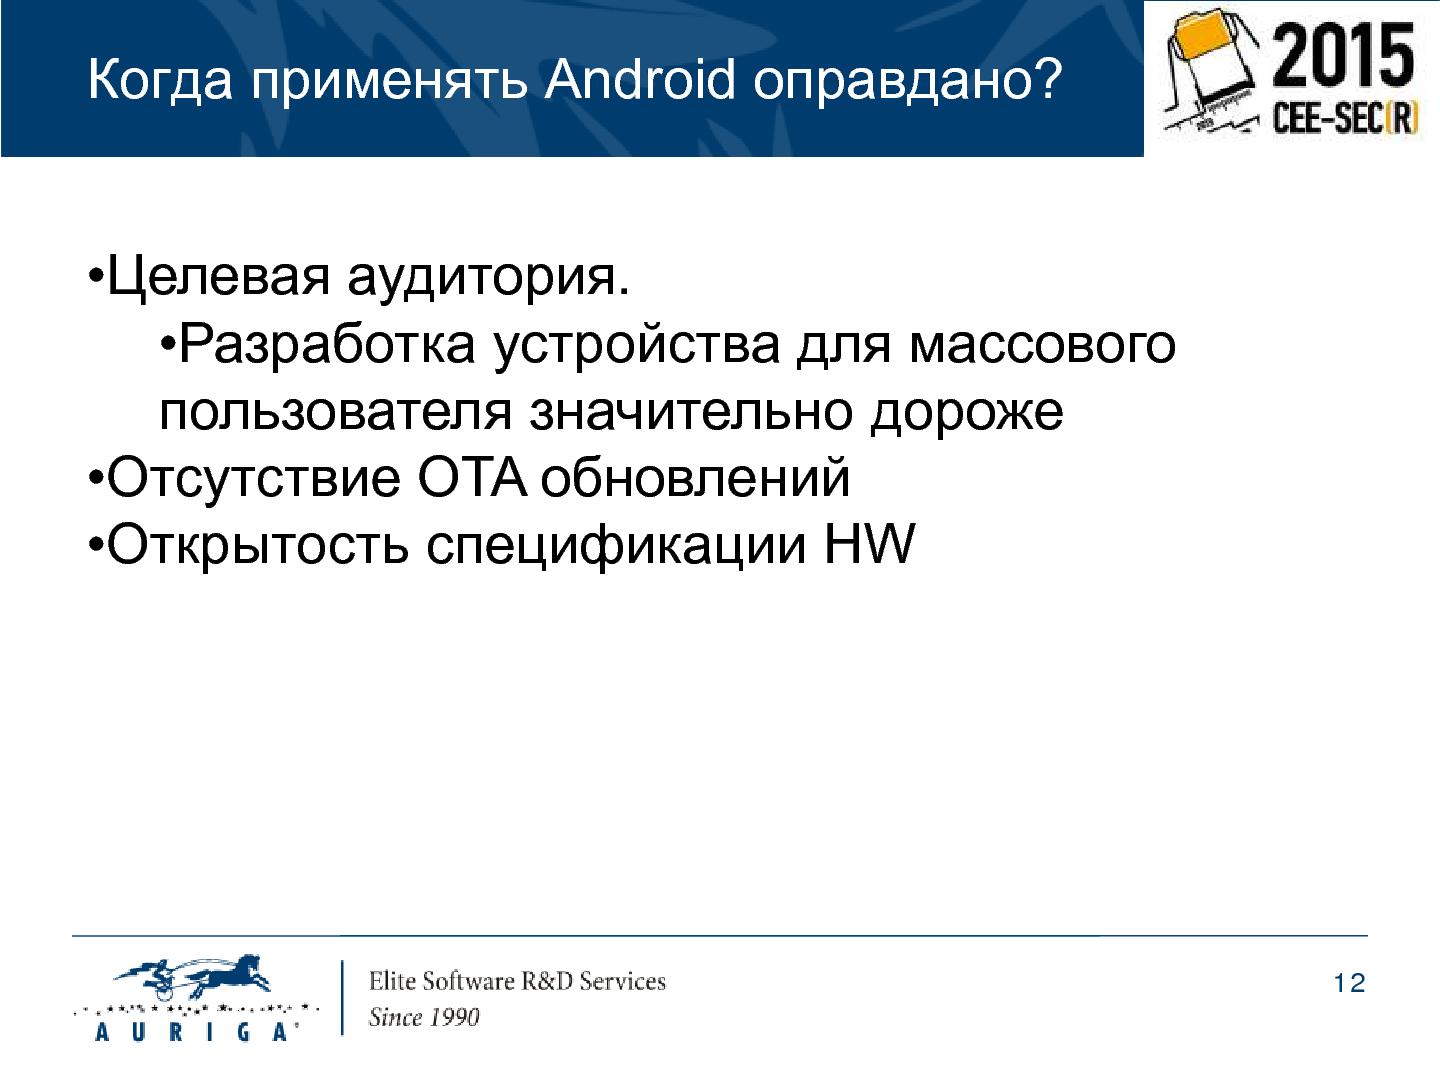 Файл:Особенности разработки портативных устройств на базе ОС Android (Михаил Малышев, SECR-2015).pdf